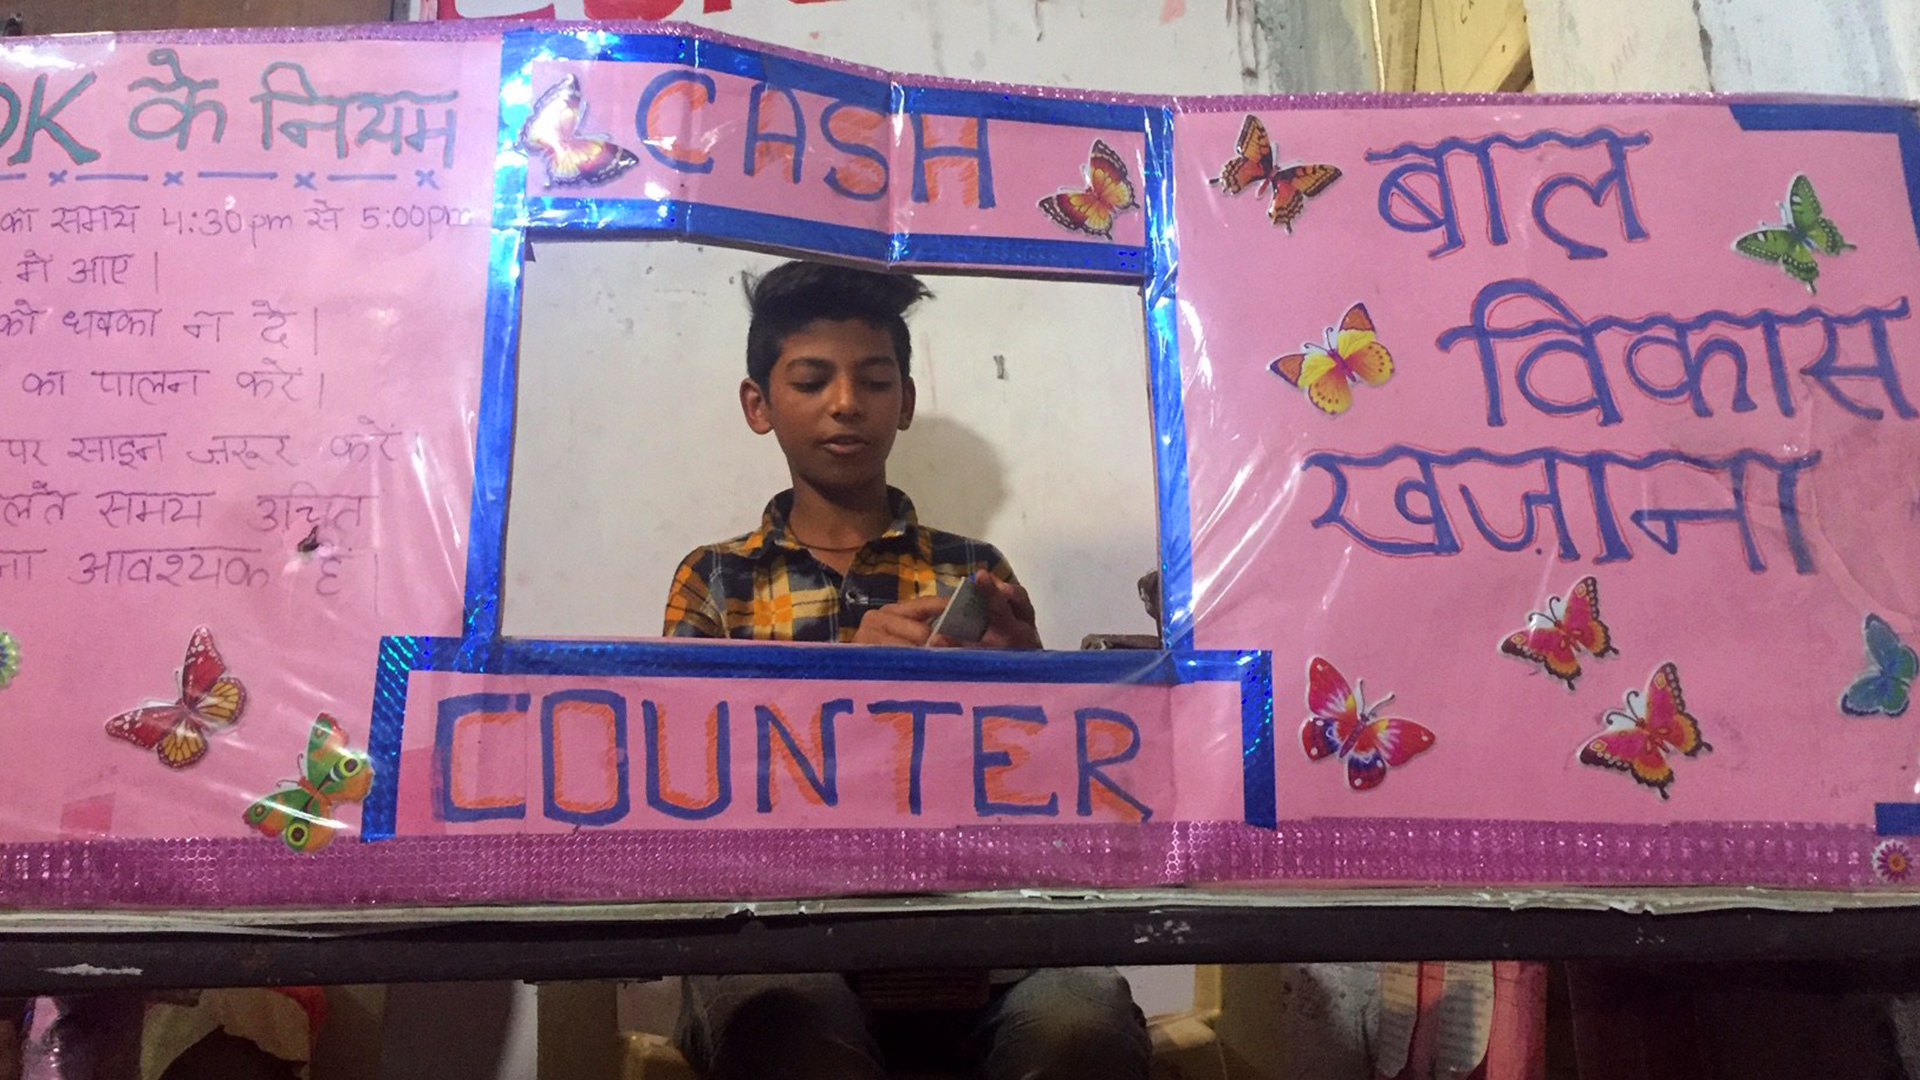 Sheikh Sameer ist gut in Mathe und wurde daher zum Bankmanager gewählt. Hier sitzt er hinter "seinem" Schalter aus Pappe. | Bildquelle: ARD Neu-Delhi